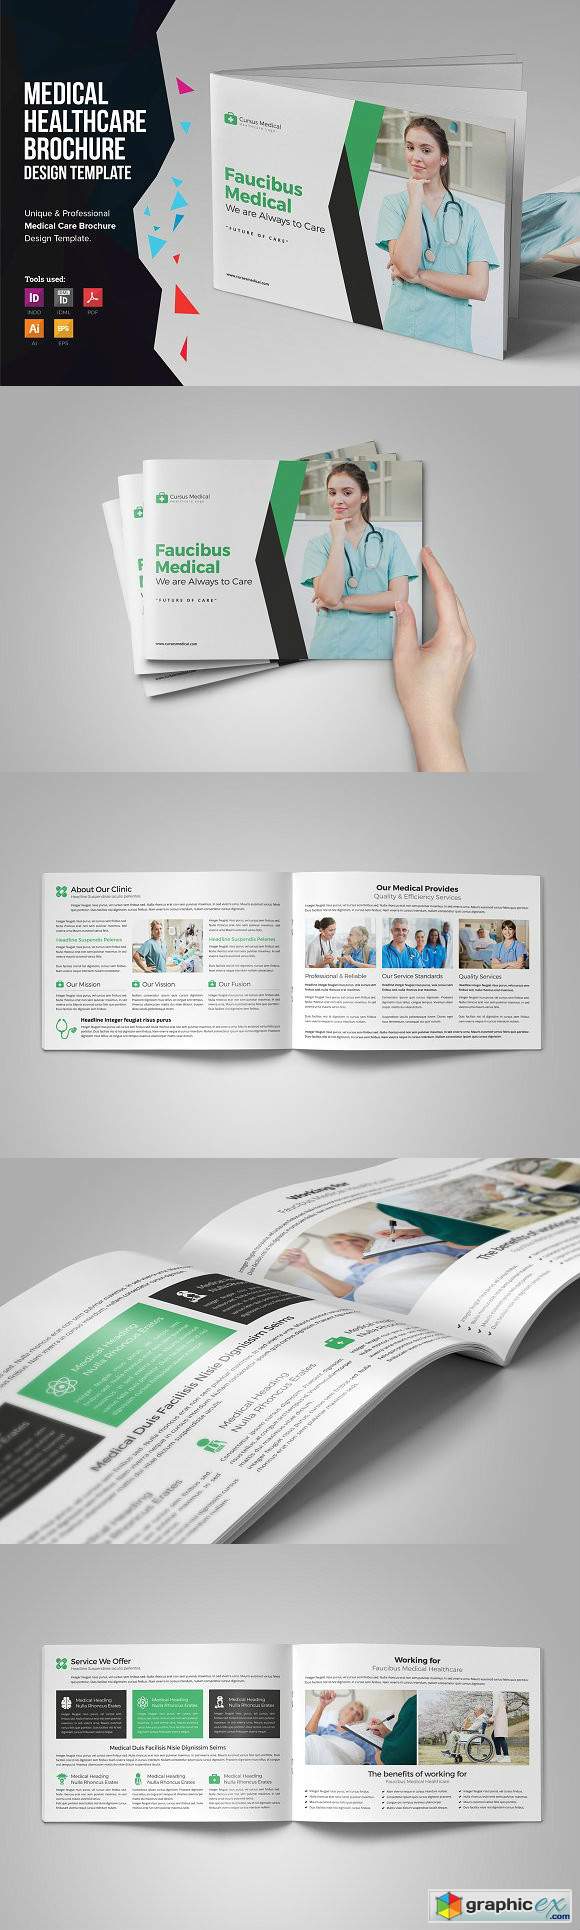 Medical HealthCare Brochure v3